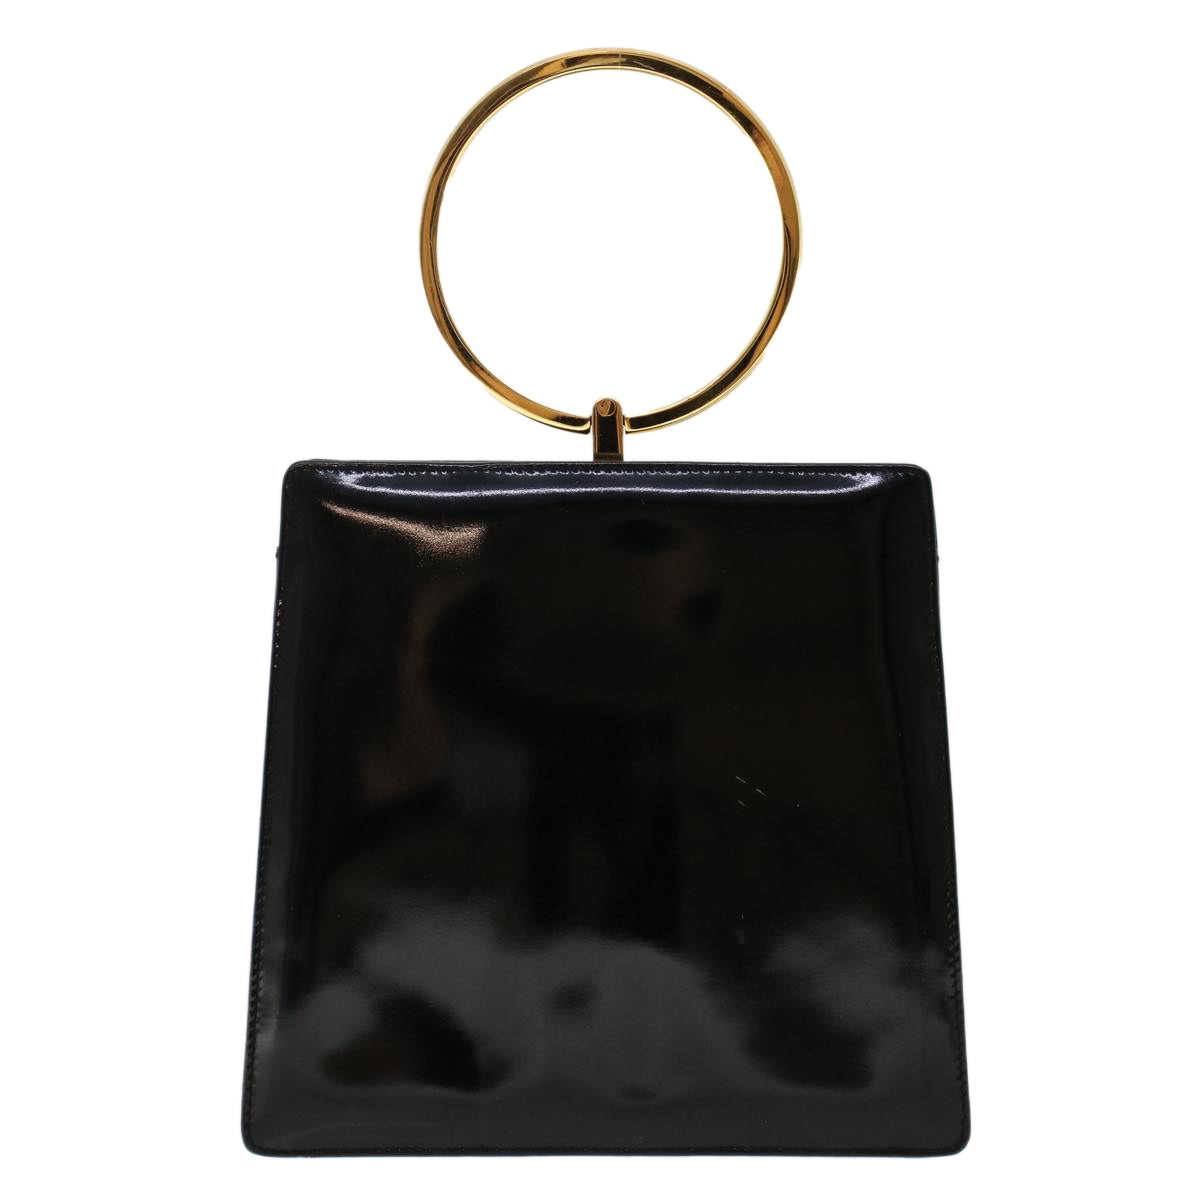 Salvatore Ferragamo Gancini Hand Bag Patent leather Black Auth 48749 - 0